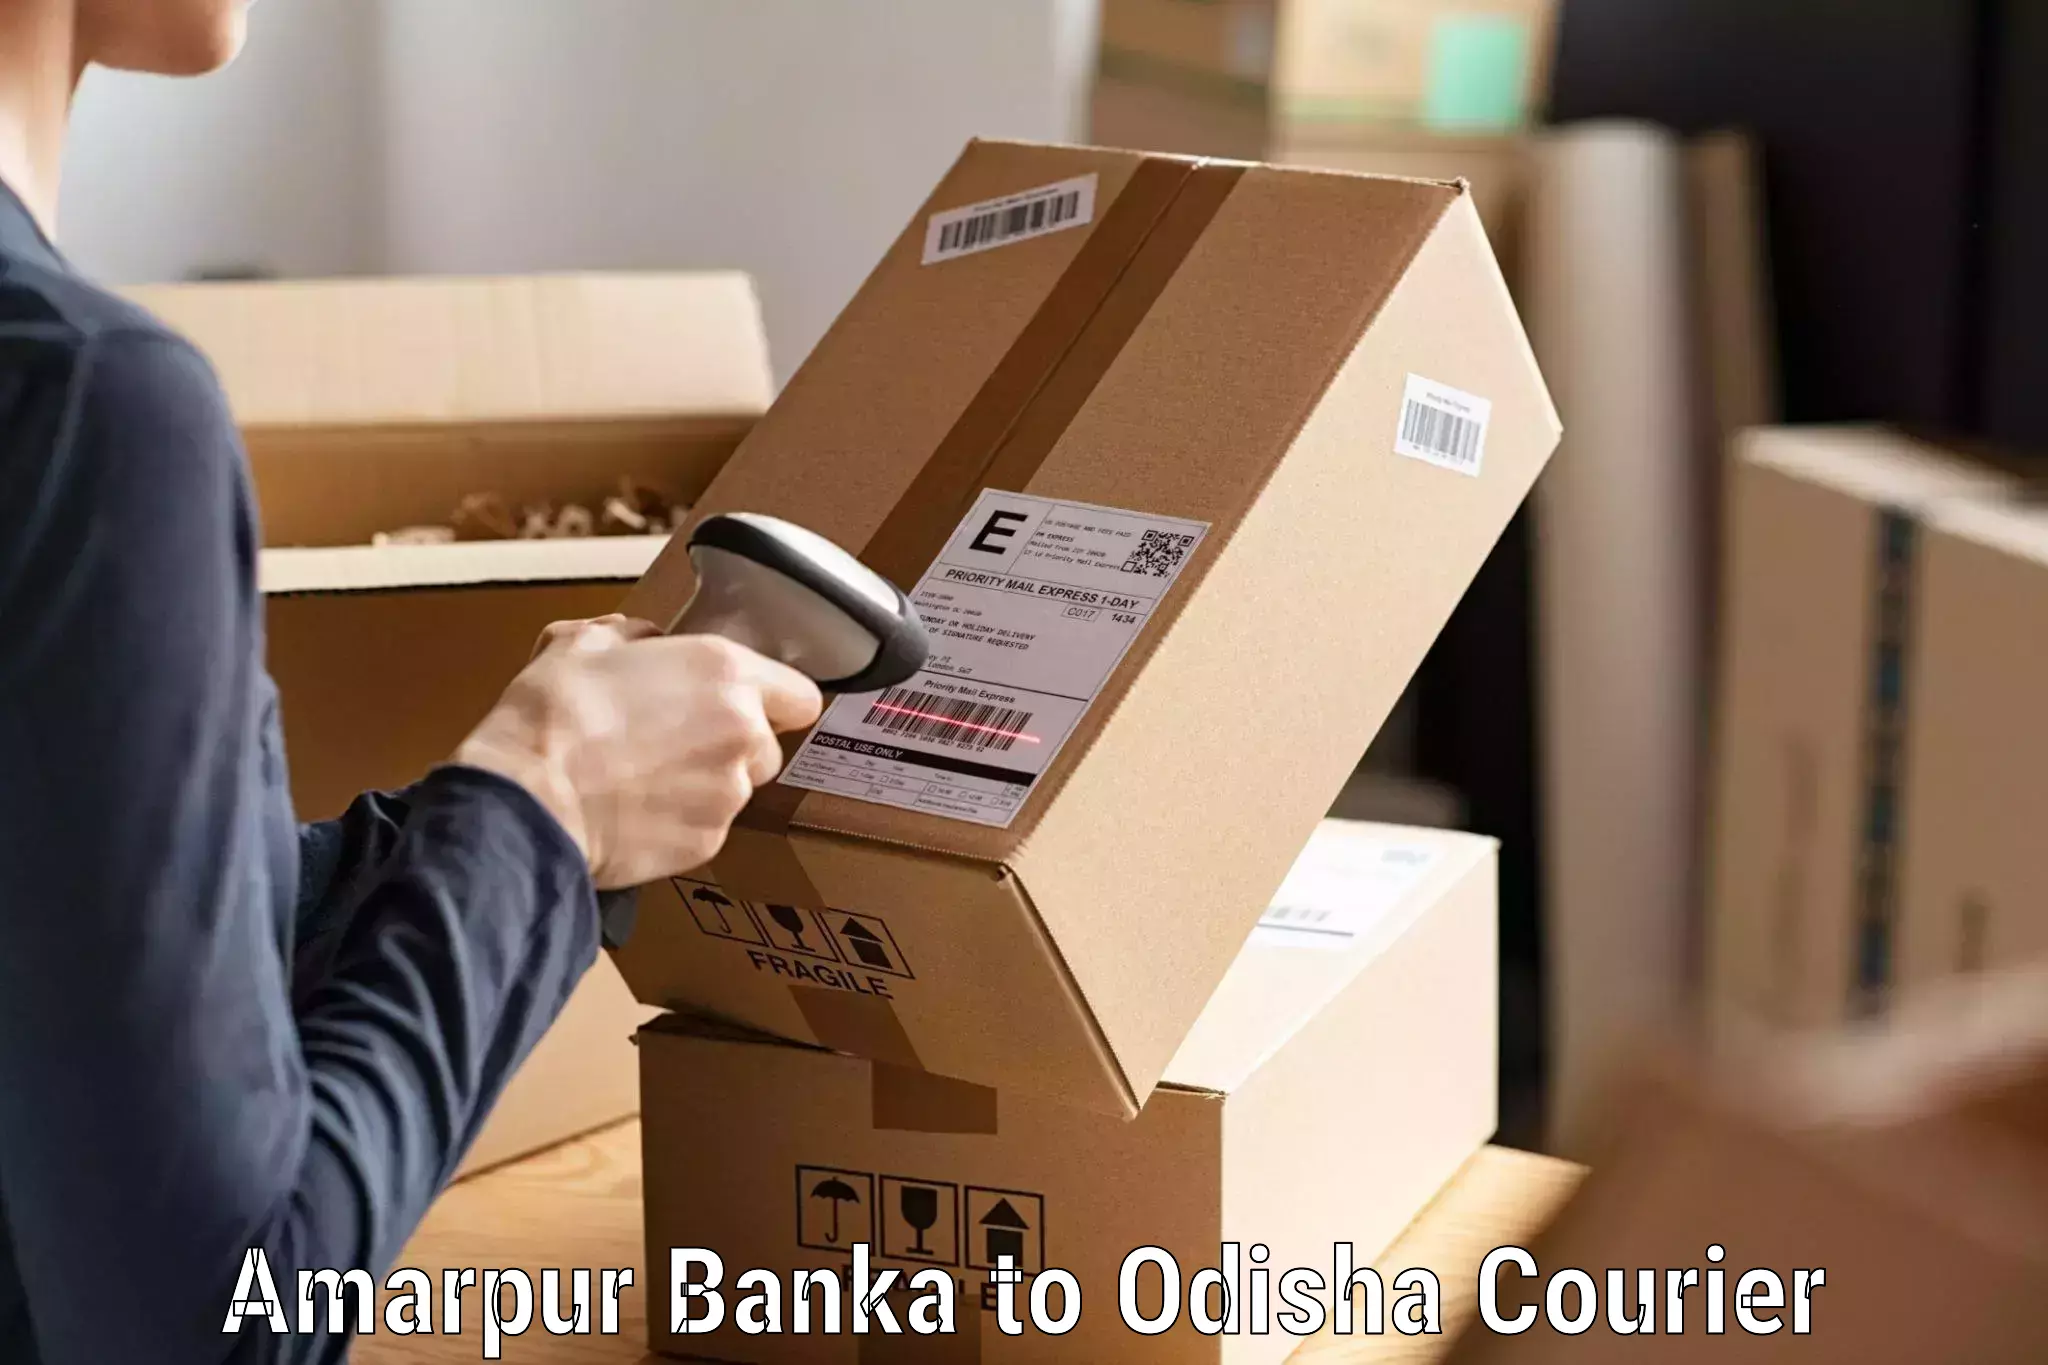 Parcel service for businesses Amarpur Banka to Odisha